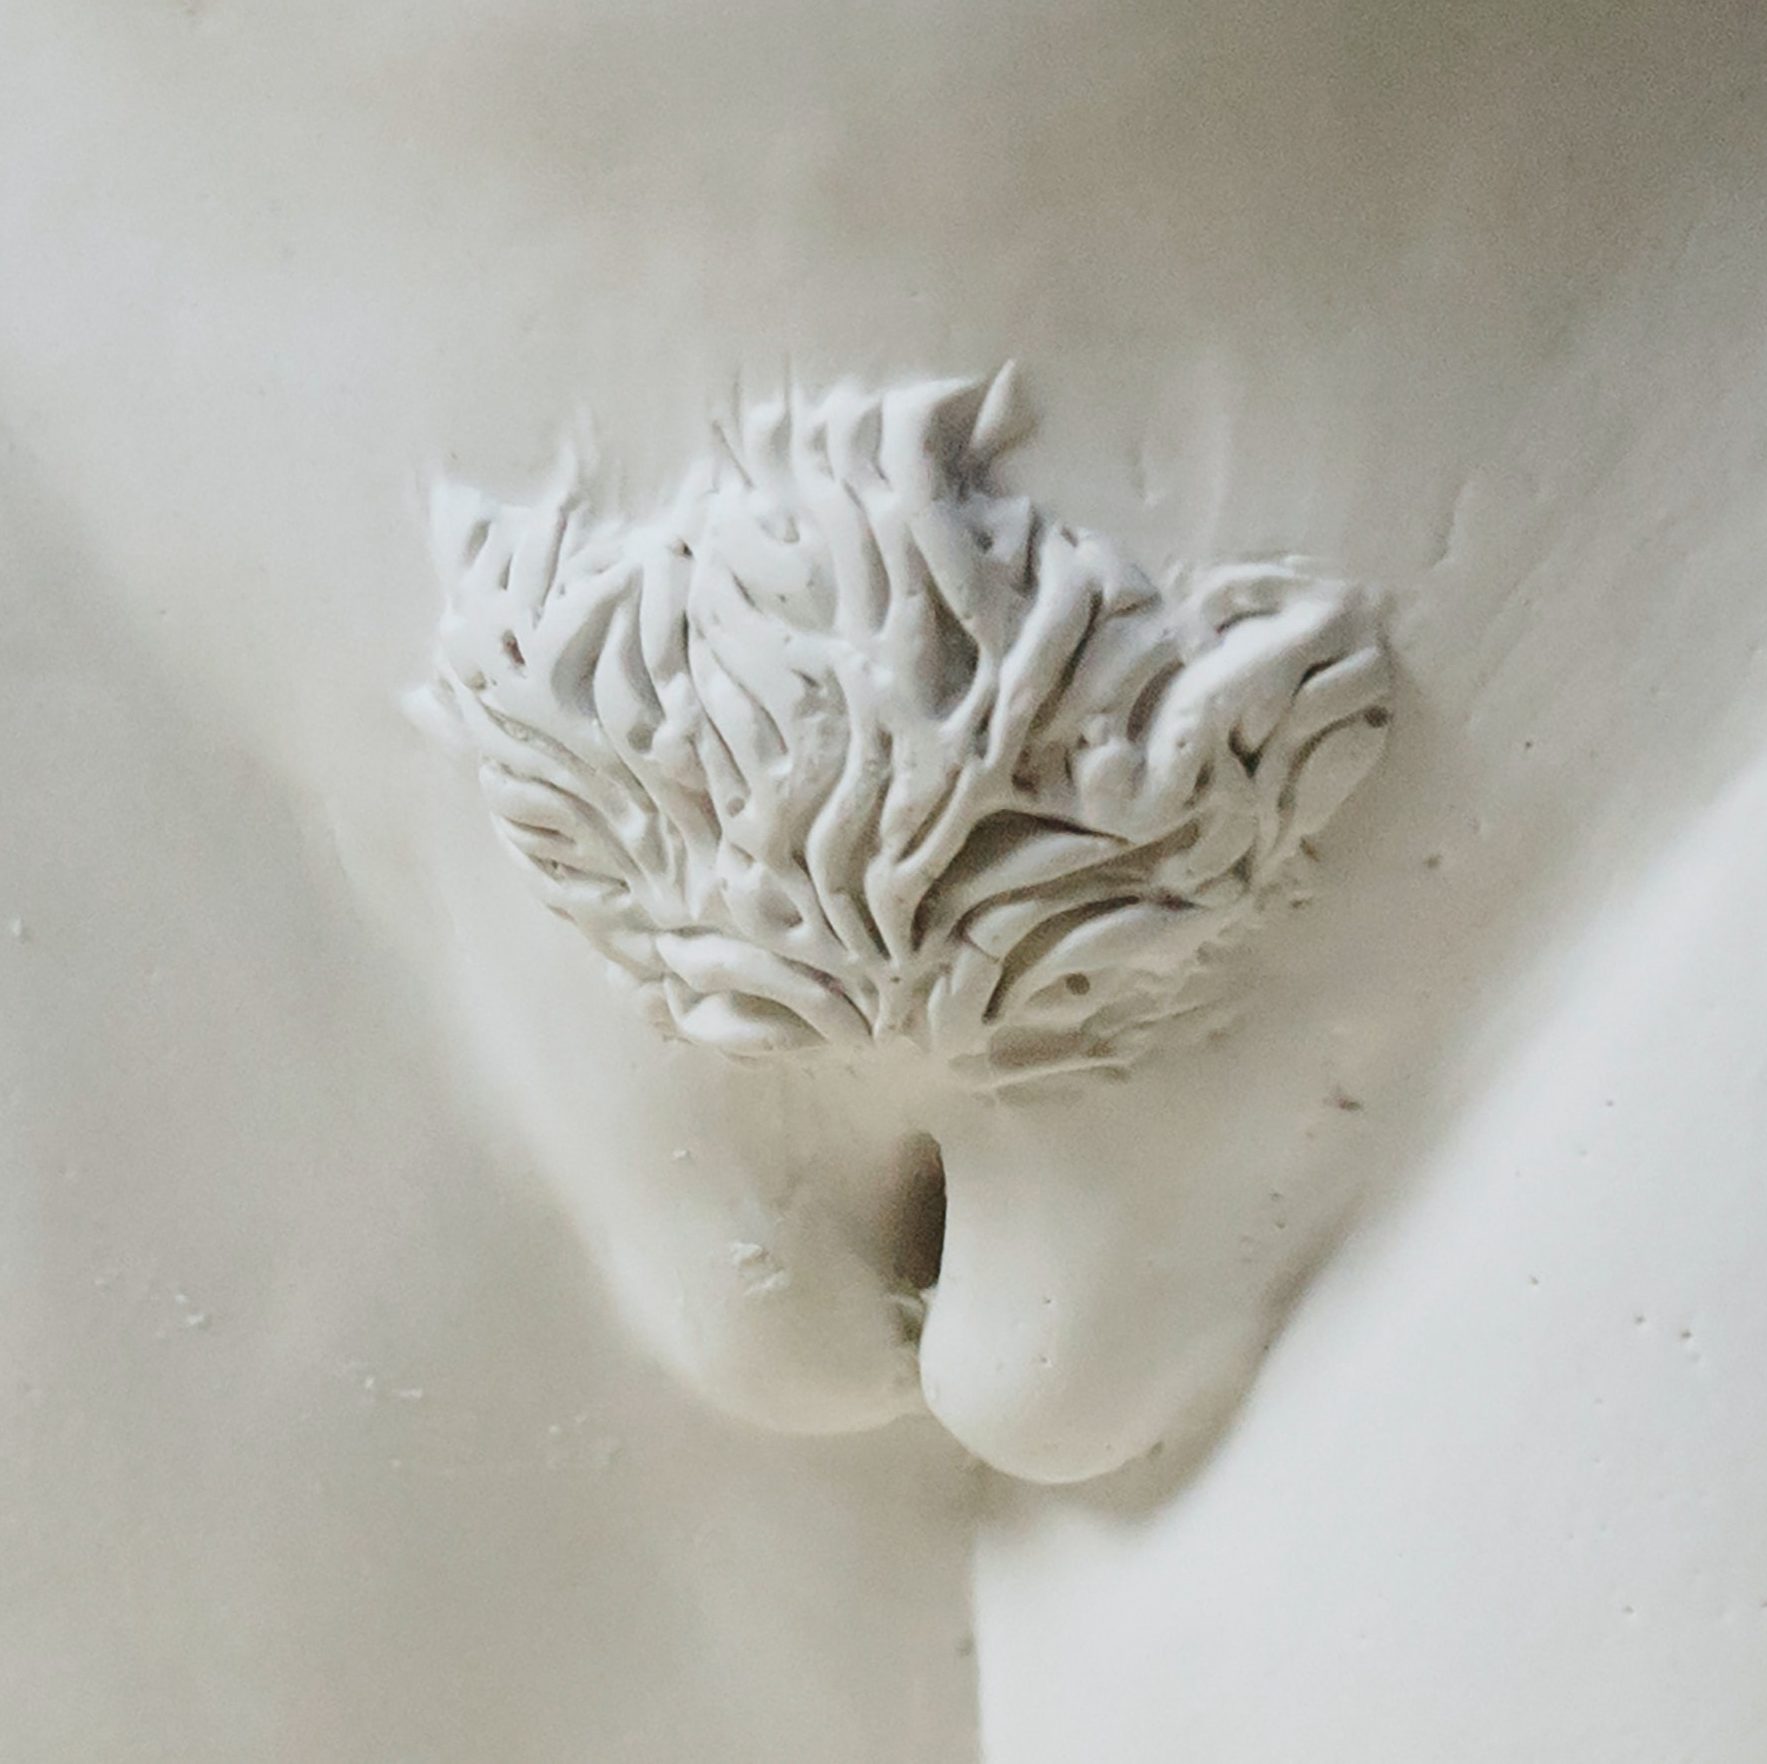 Art: artificial vagina